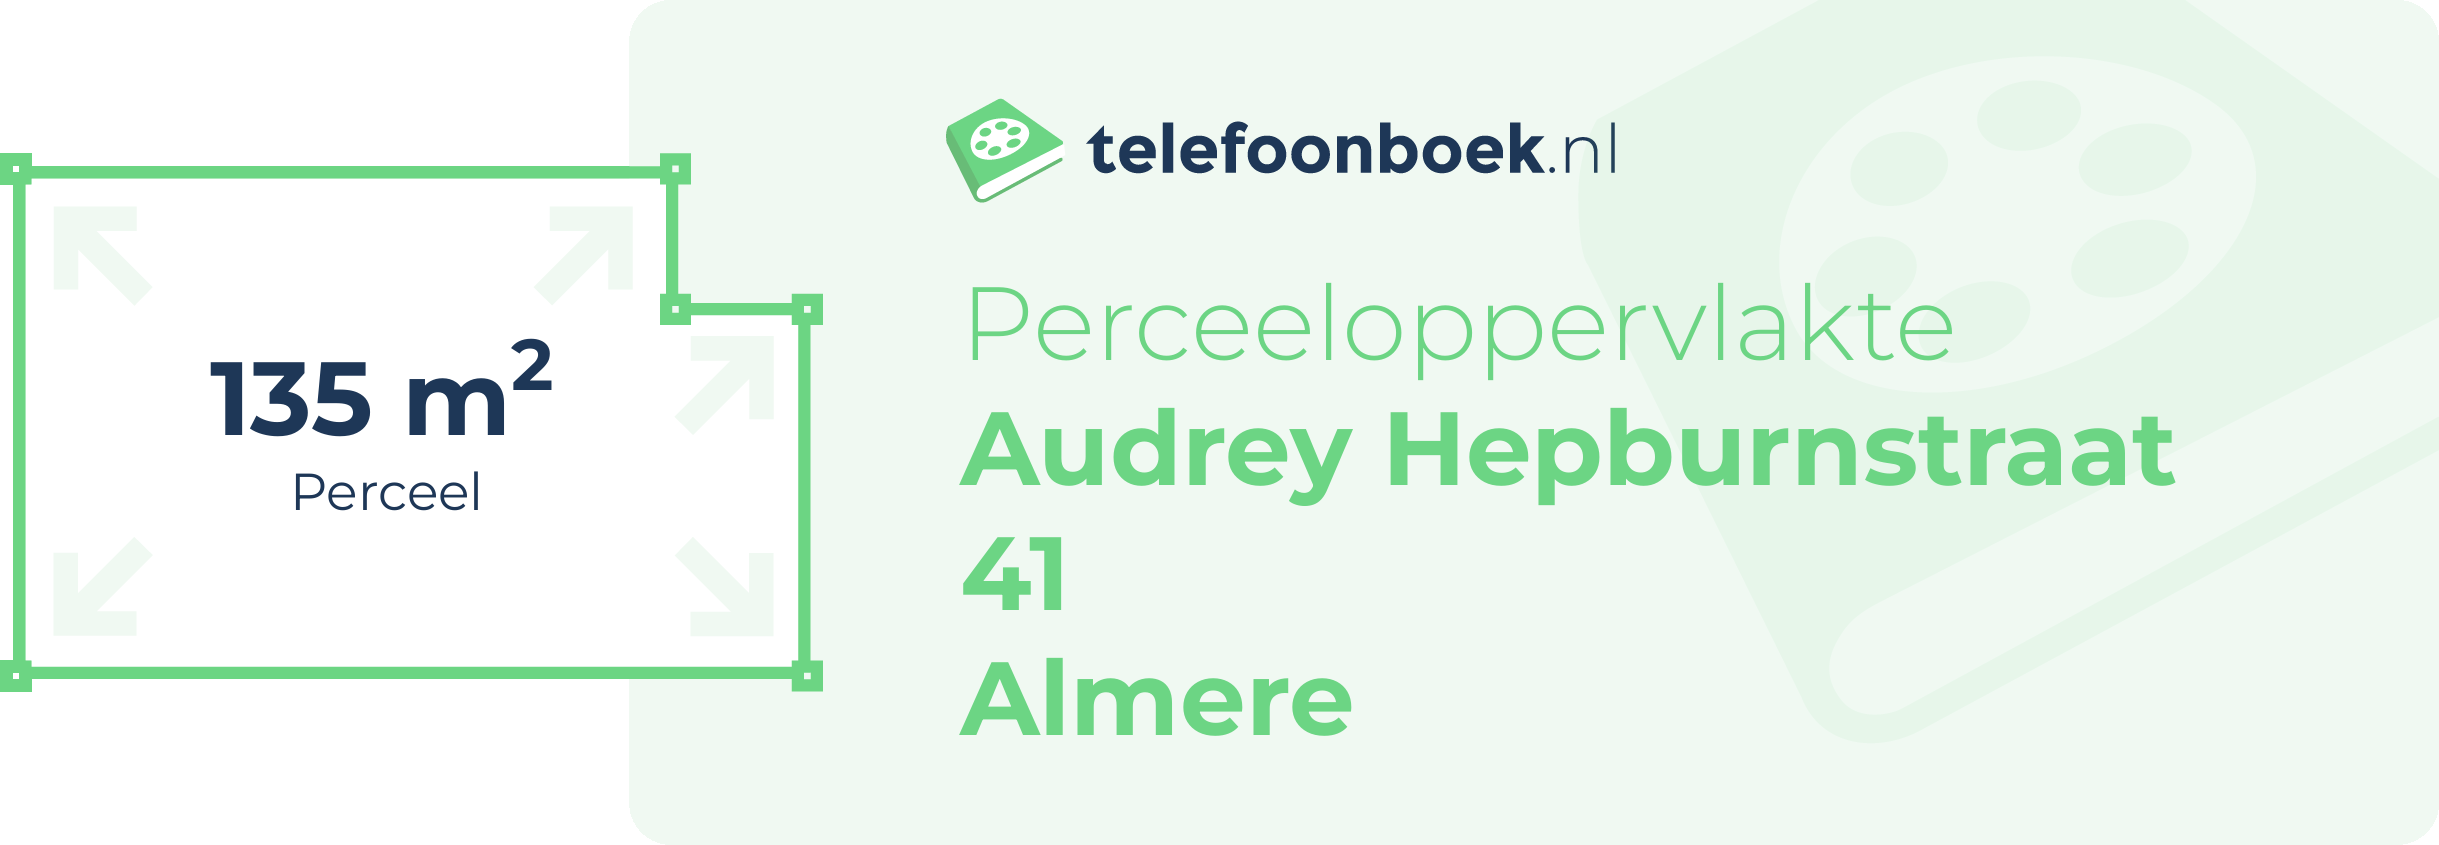 Perceeloppervlakte Audrey Hepburnstraat 41 Almere